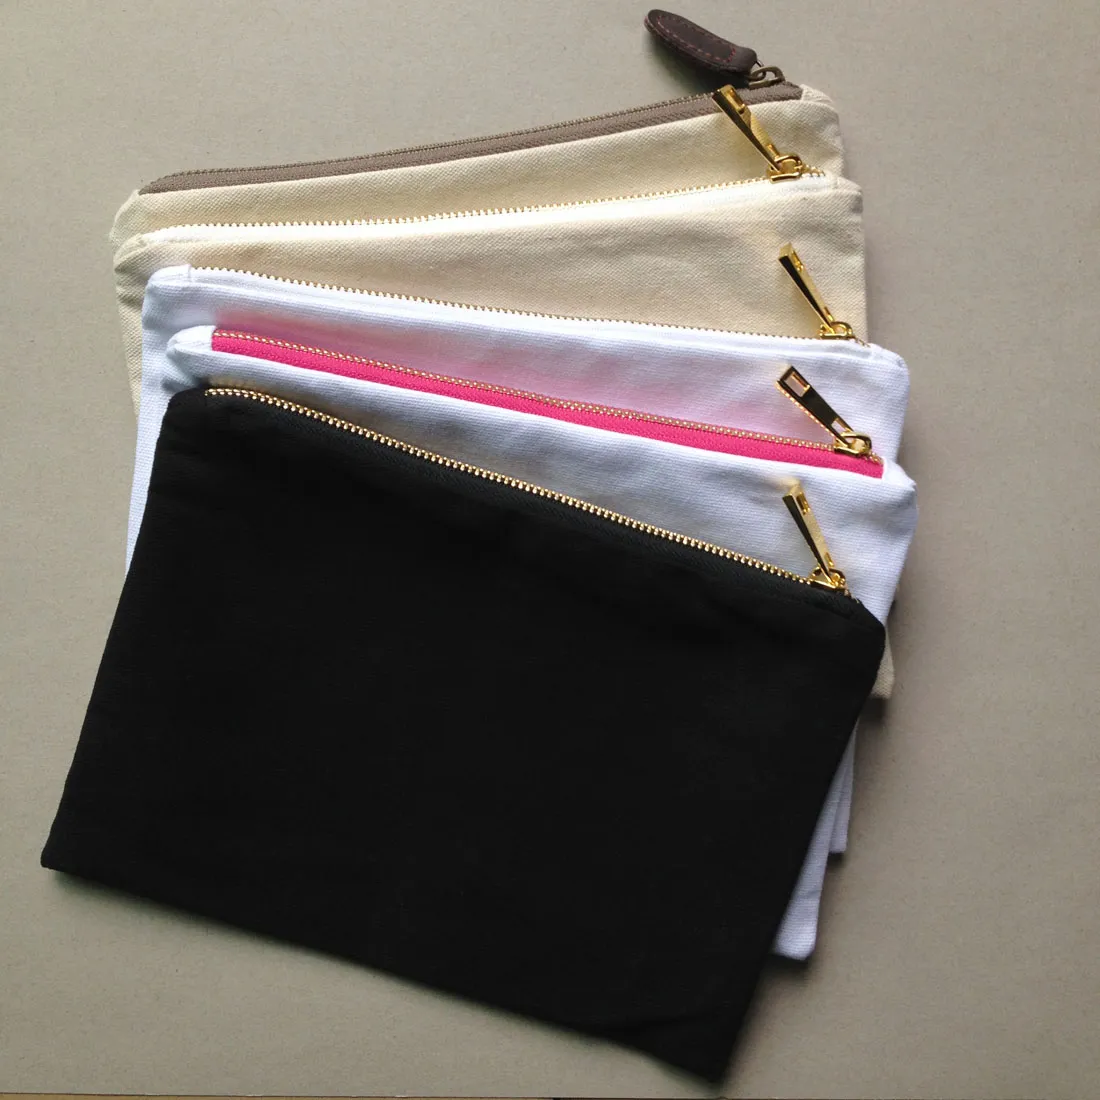 pianura tela di cotone vuote compongono il sacchetto con rivestimento superiore zip oro qualità 7x10in sacchetto di colore toilette solida per vernice di DIY / stampa in bianco / bianco / avorio